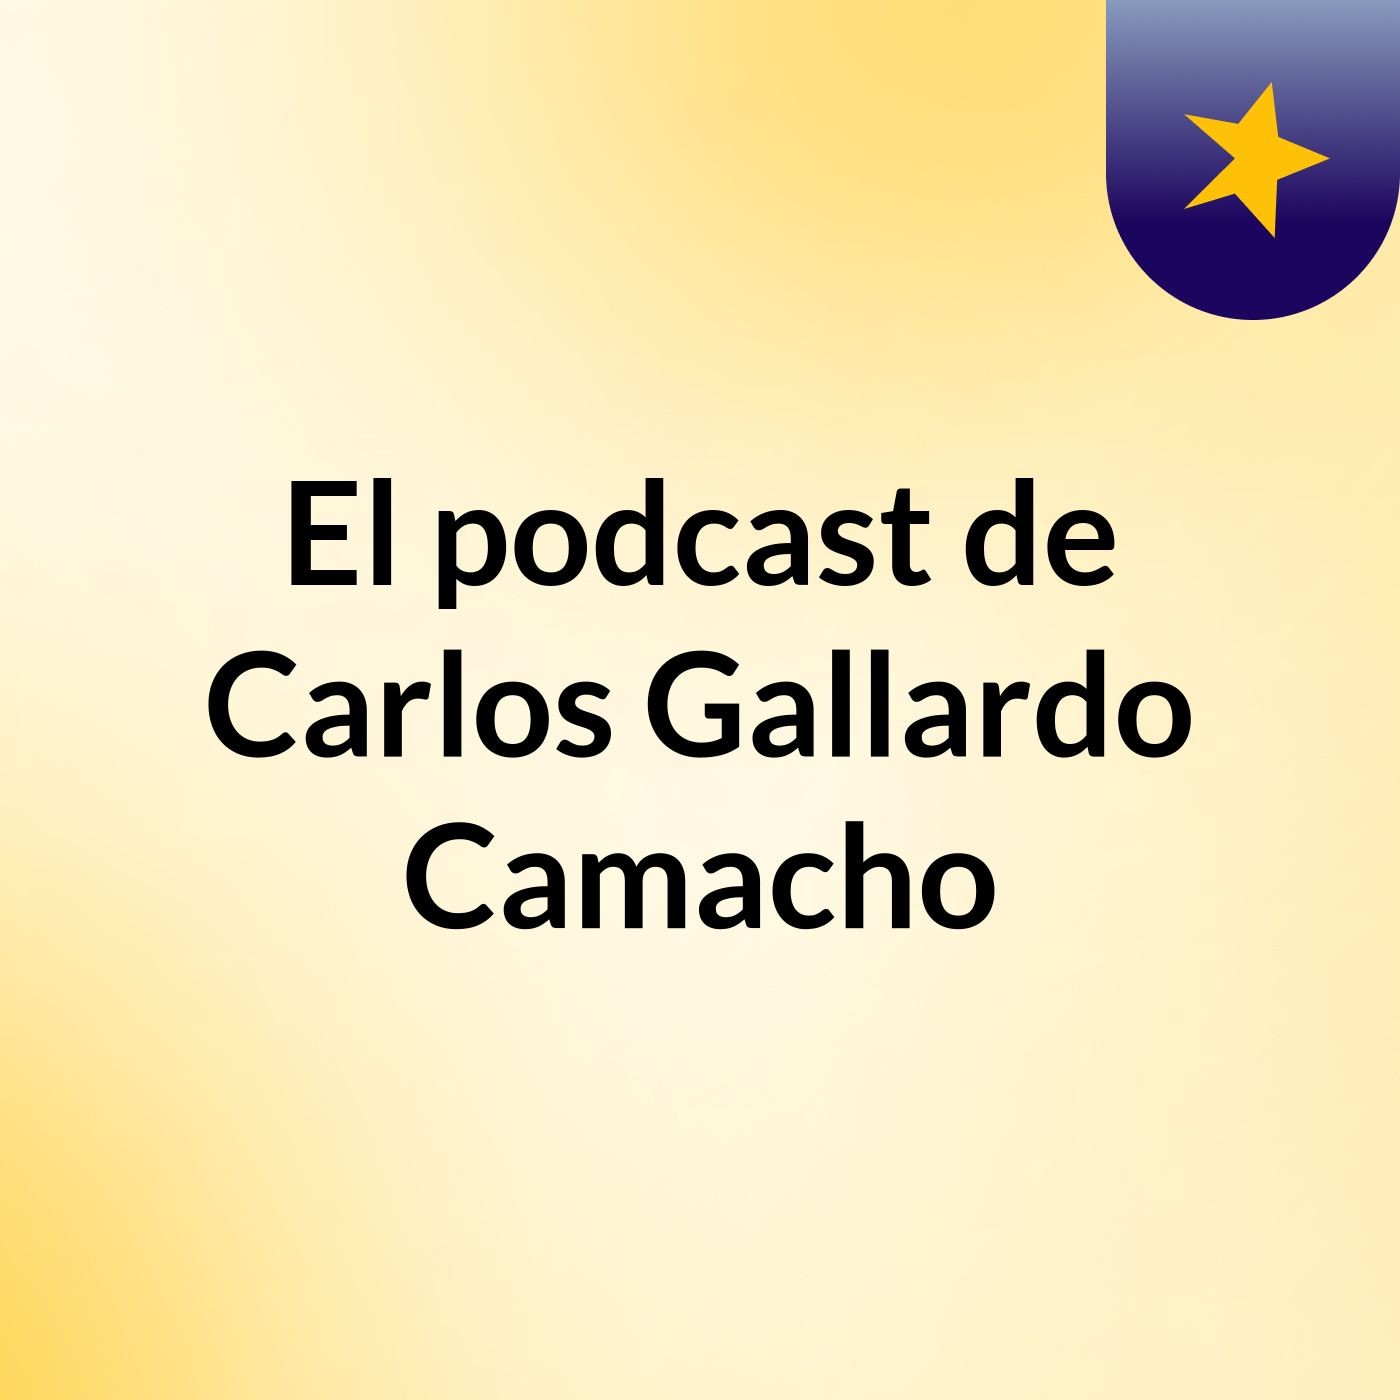 Episodio 7 - El podcast de Carlos Gallardo Camacho